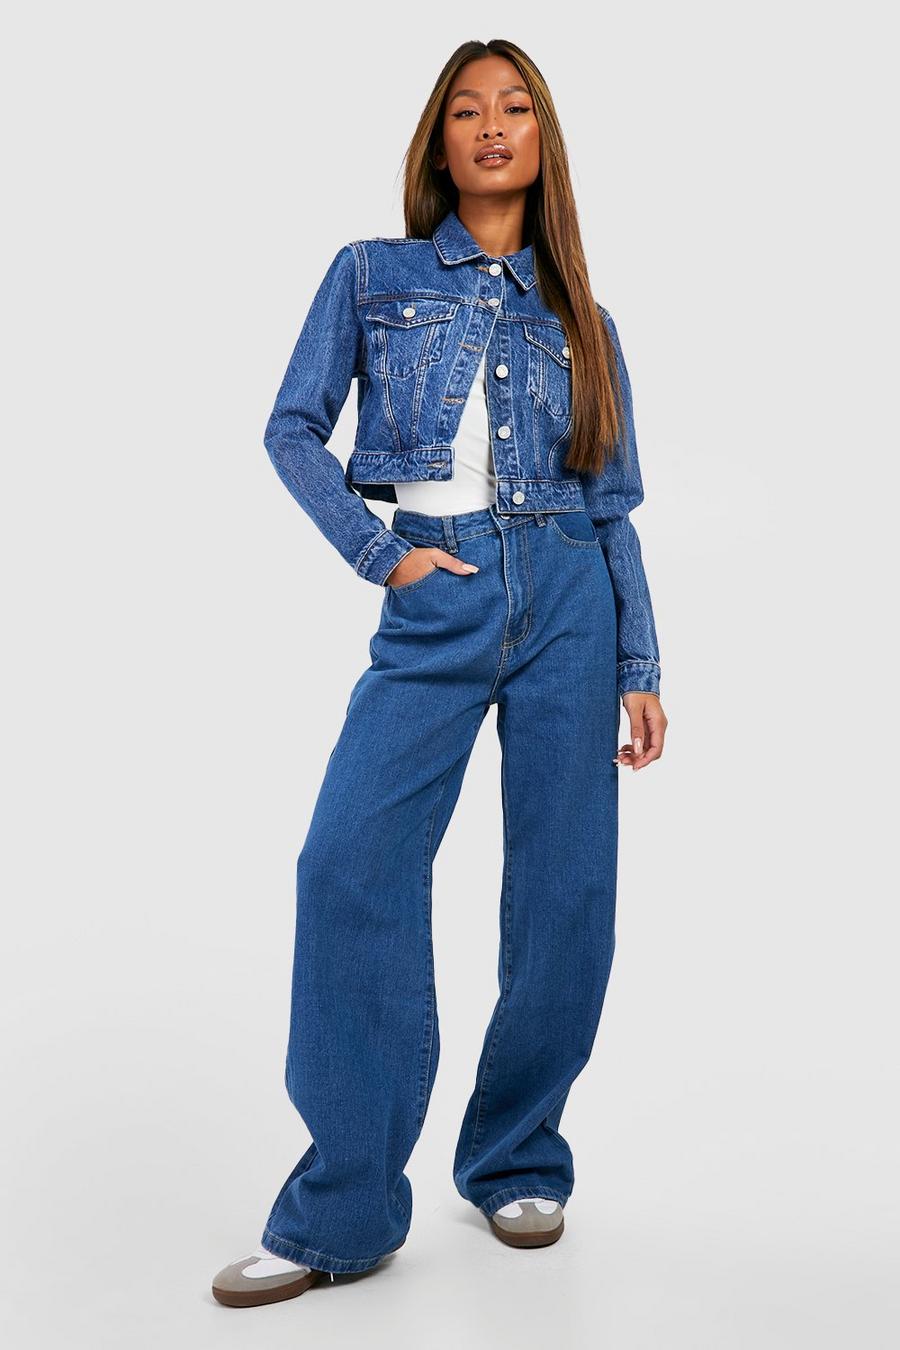 Basics weite Jeans mit hohem Bund, Mid blue blau